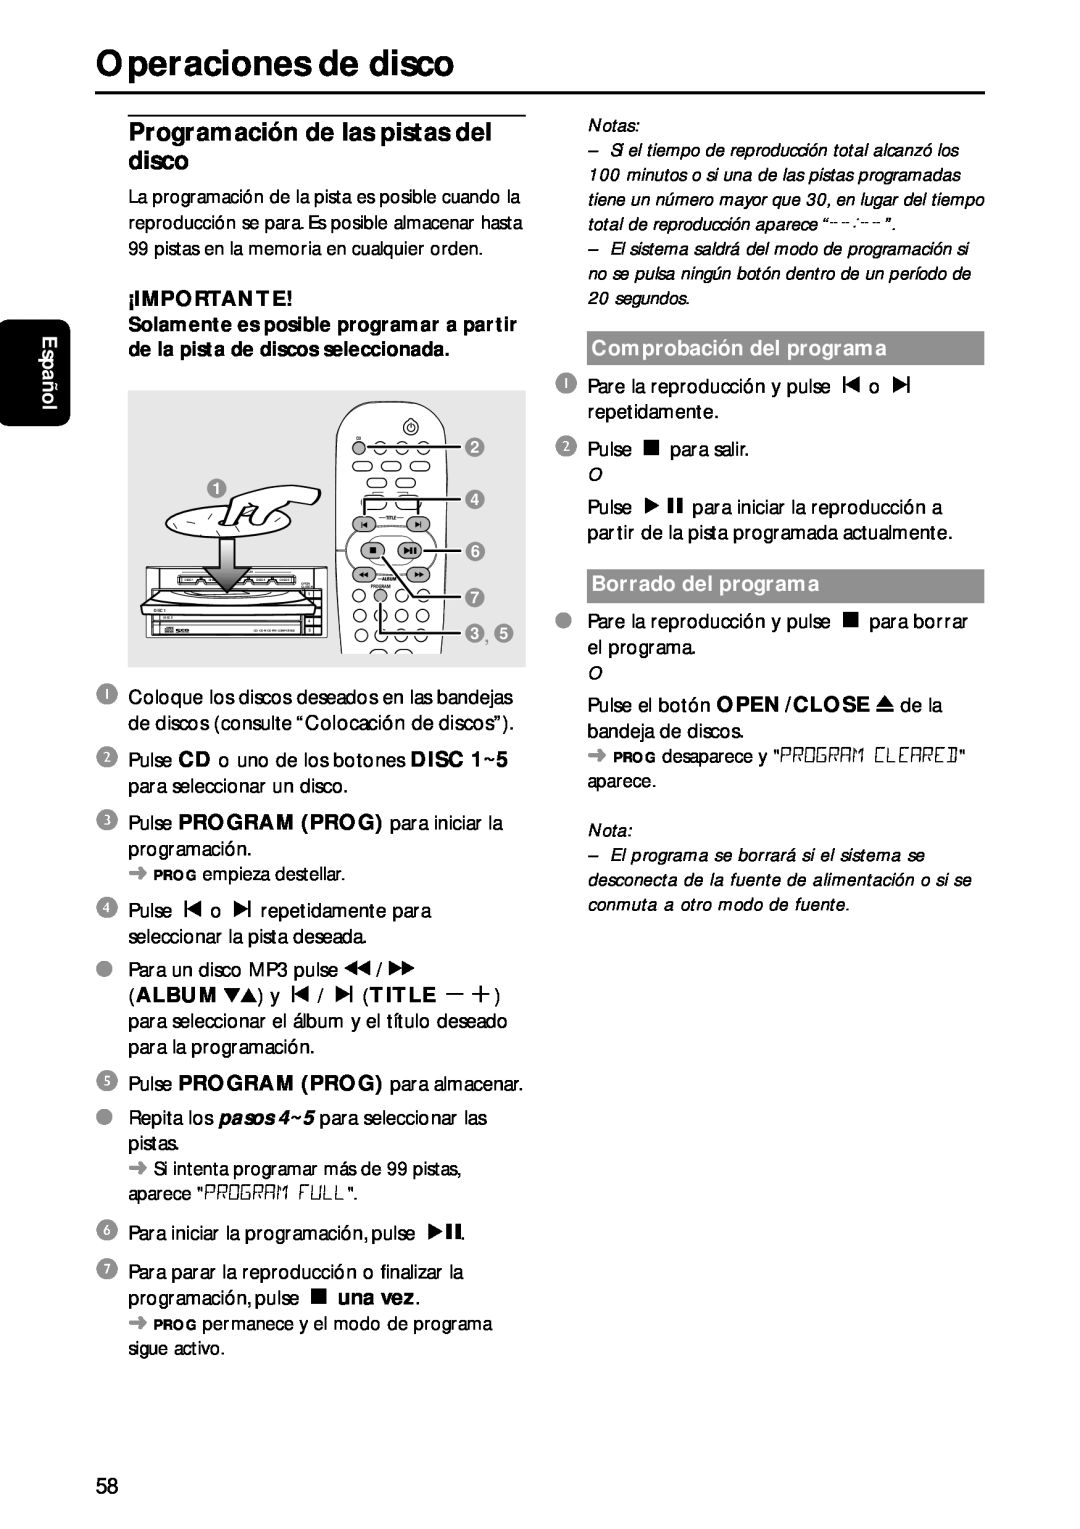 Philips MC-M570 manual Operaciones de disco, Español, ¡Importante, Notas, Comprobación del programa, Borrado del programa 